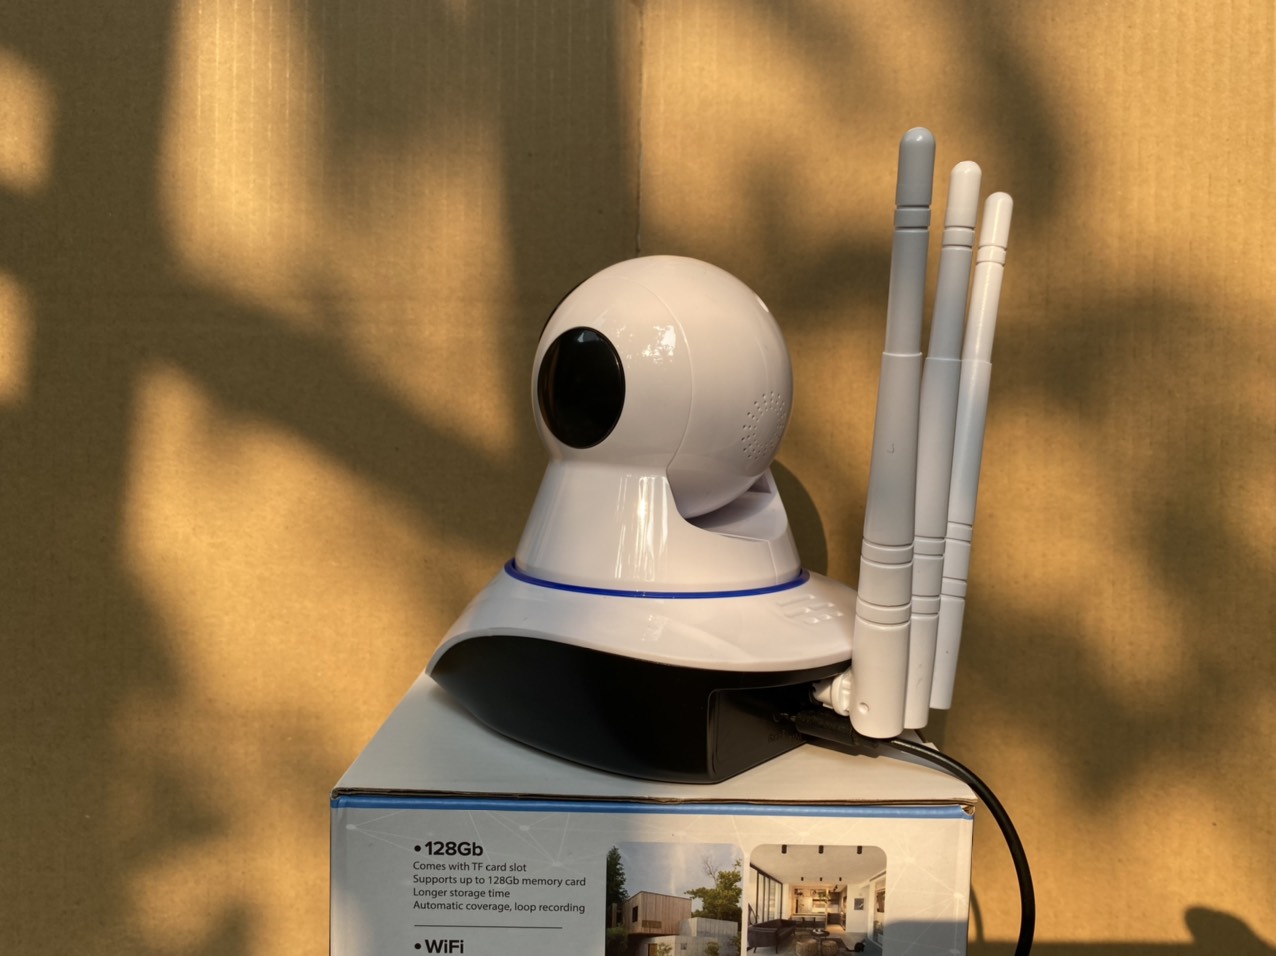 Camera wifi Yoosee chuẩn 3 râu 11 LED Full HD,KÈM THẺ NHỚ 64G - hàng chính hãng